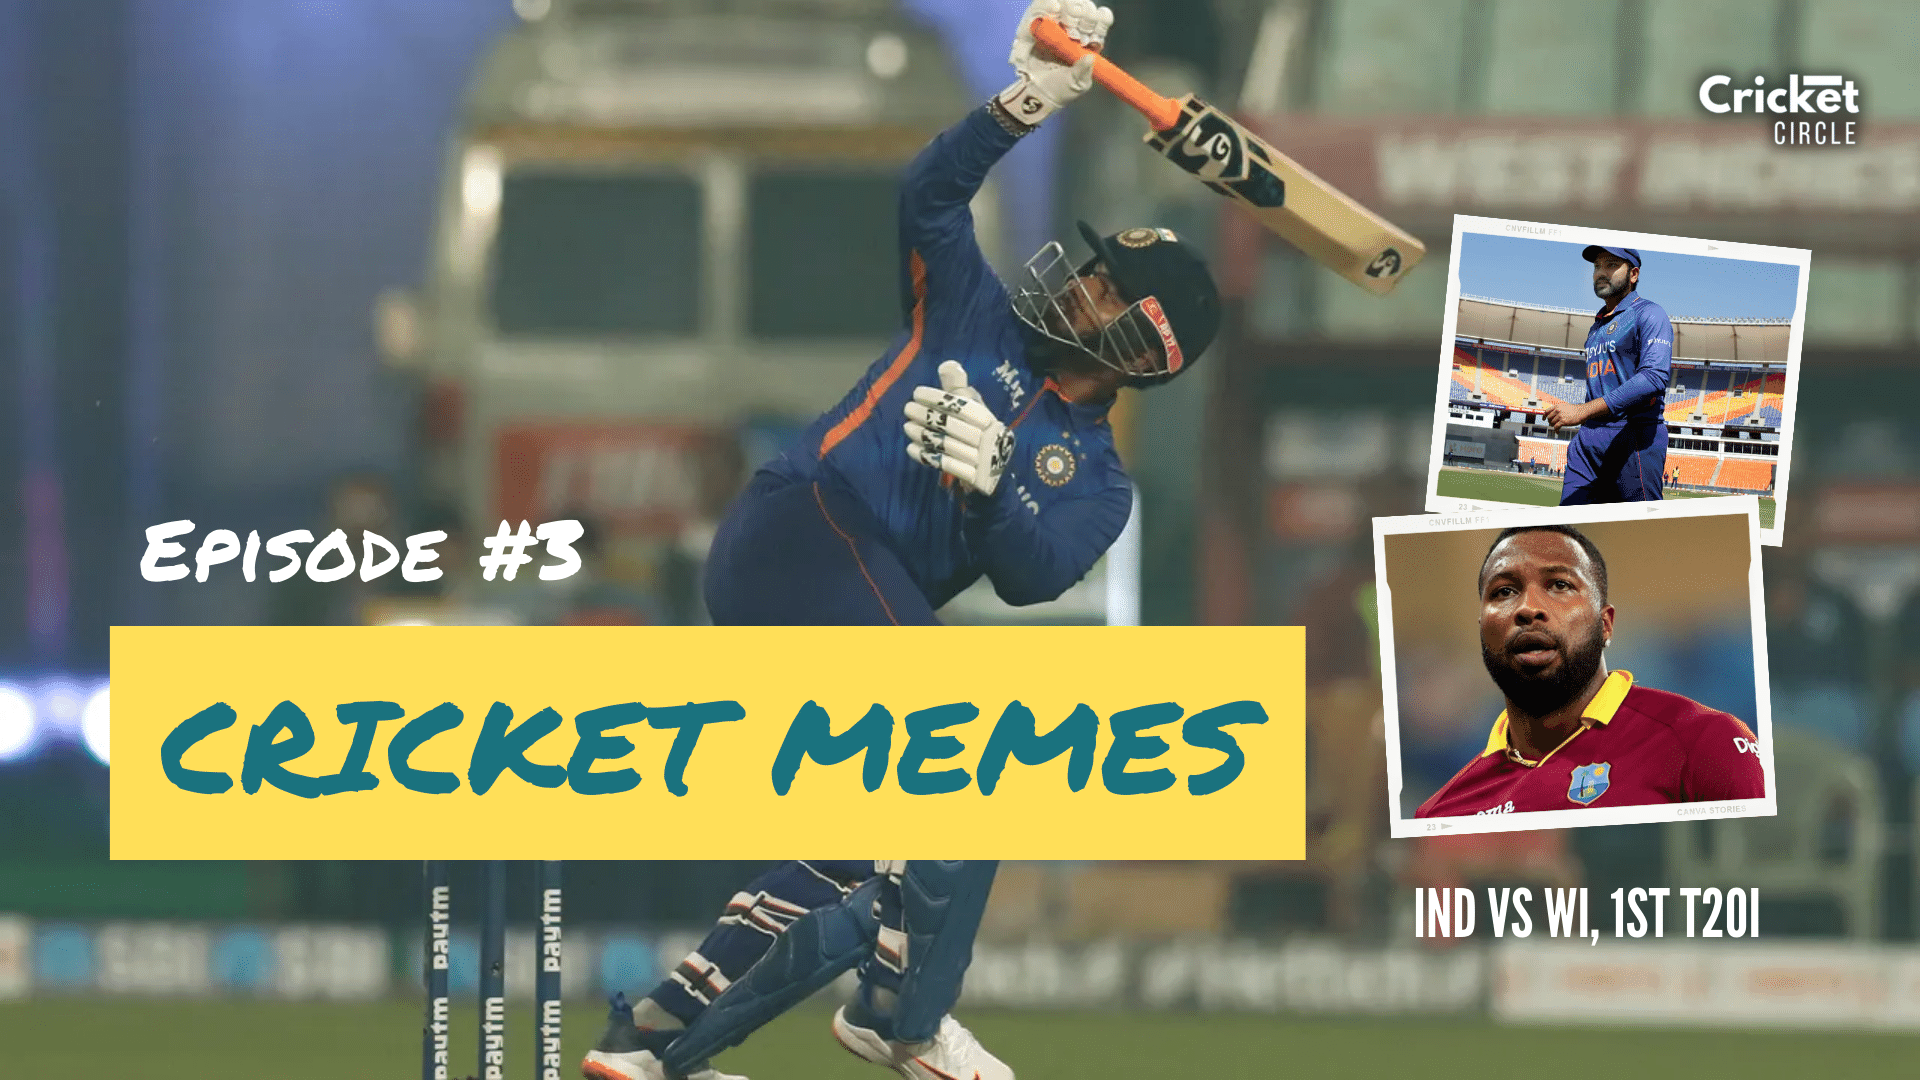 Cricket Memes ? IND vs WI 1st T20I Memes? Episode #3